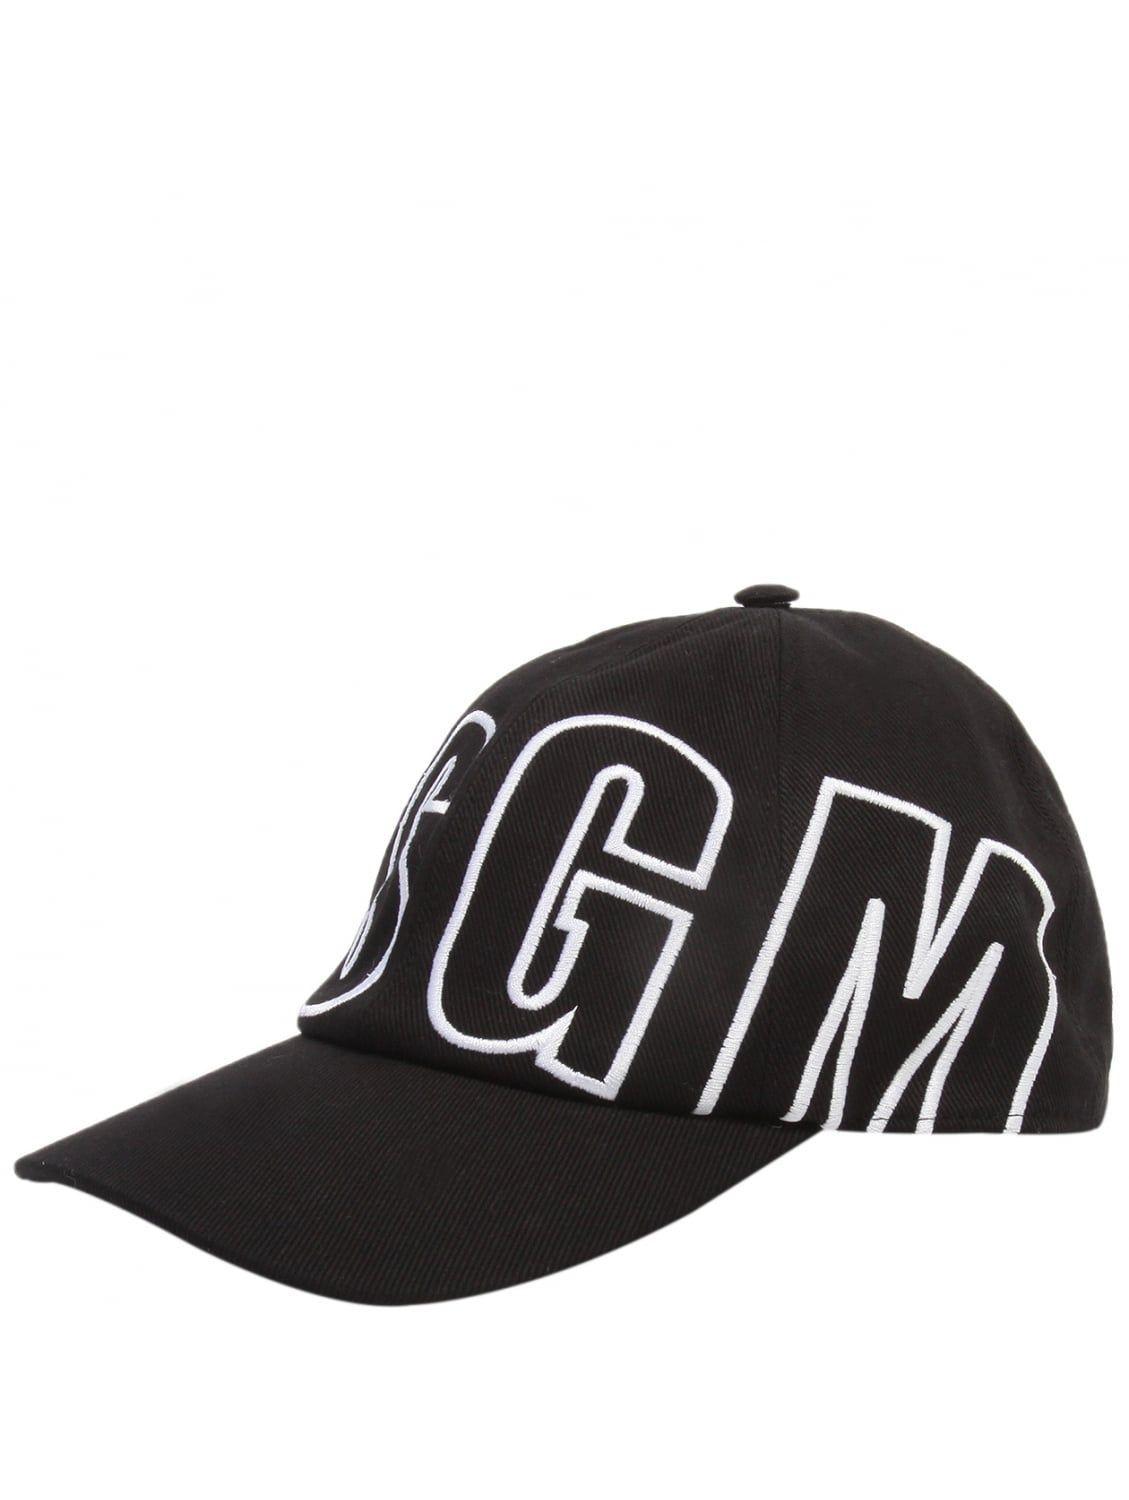 Cool Black and White Outline Logo - MSGM Outline Logo Baseball Cap Black. Hervia.com